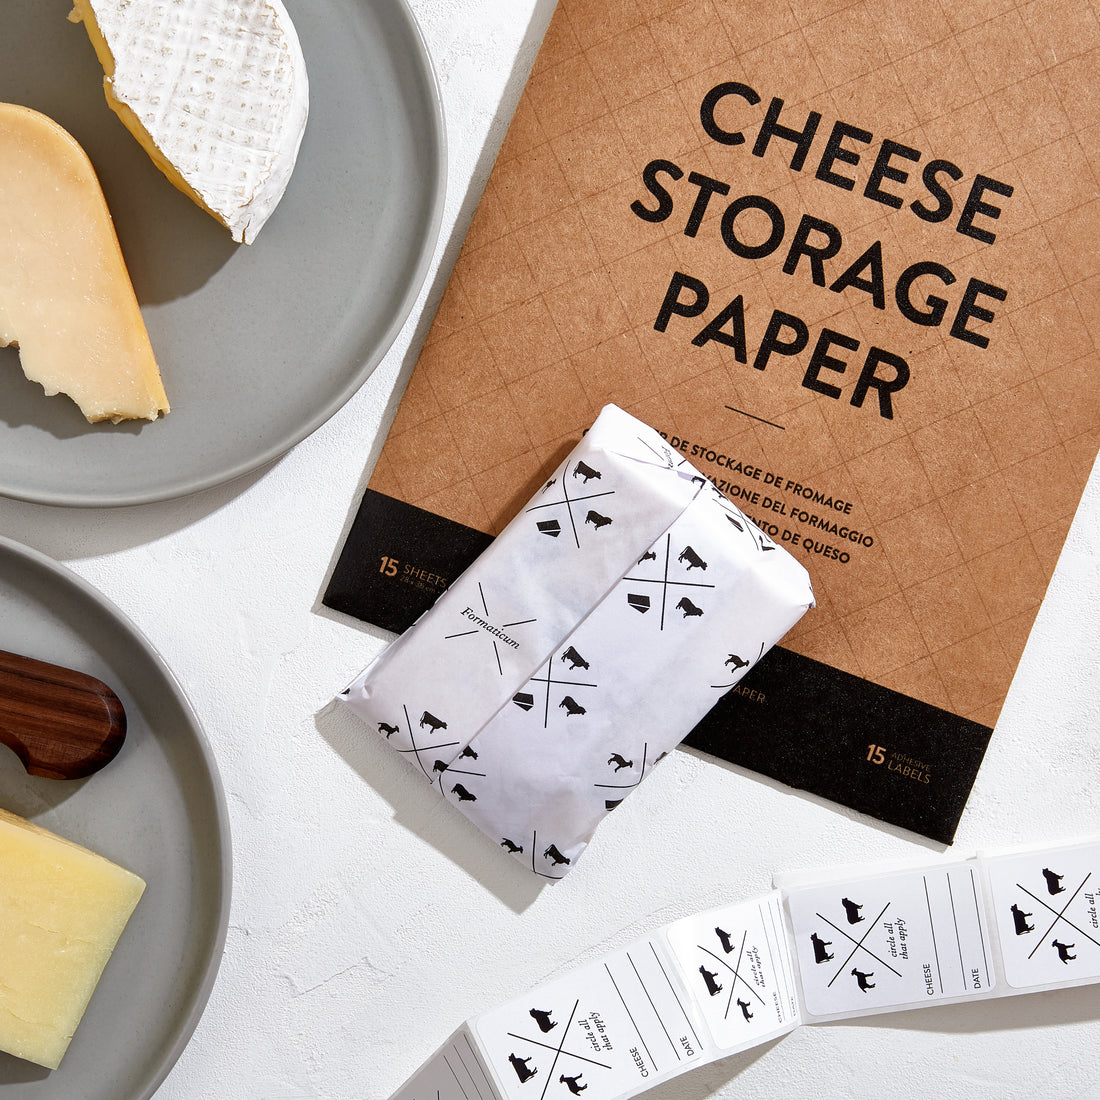 Kit de conservation du fromage – Formaticum